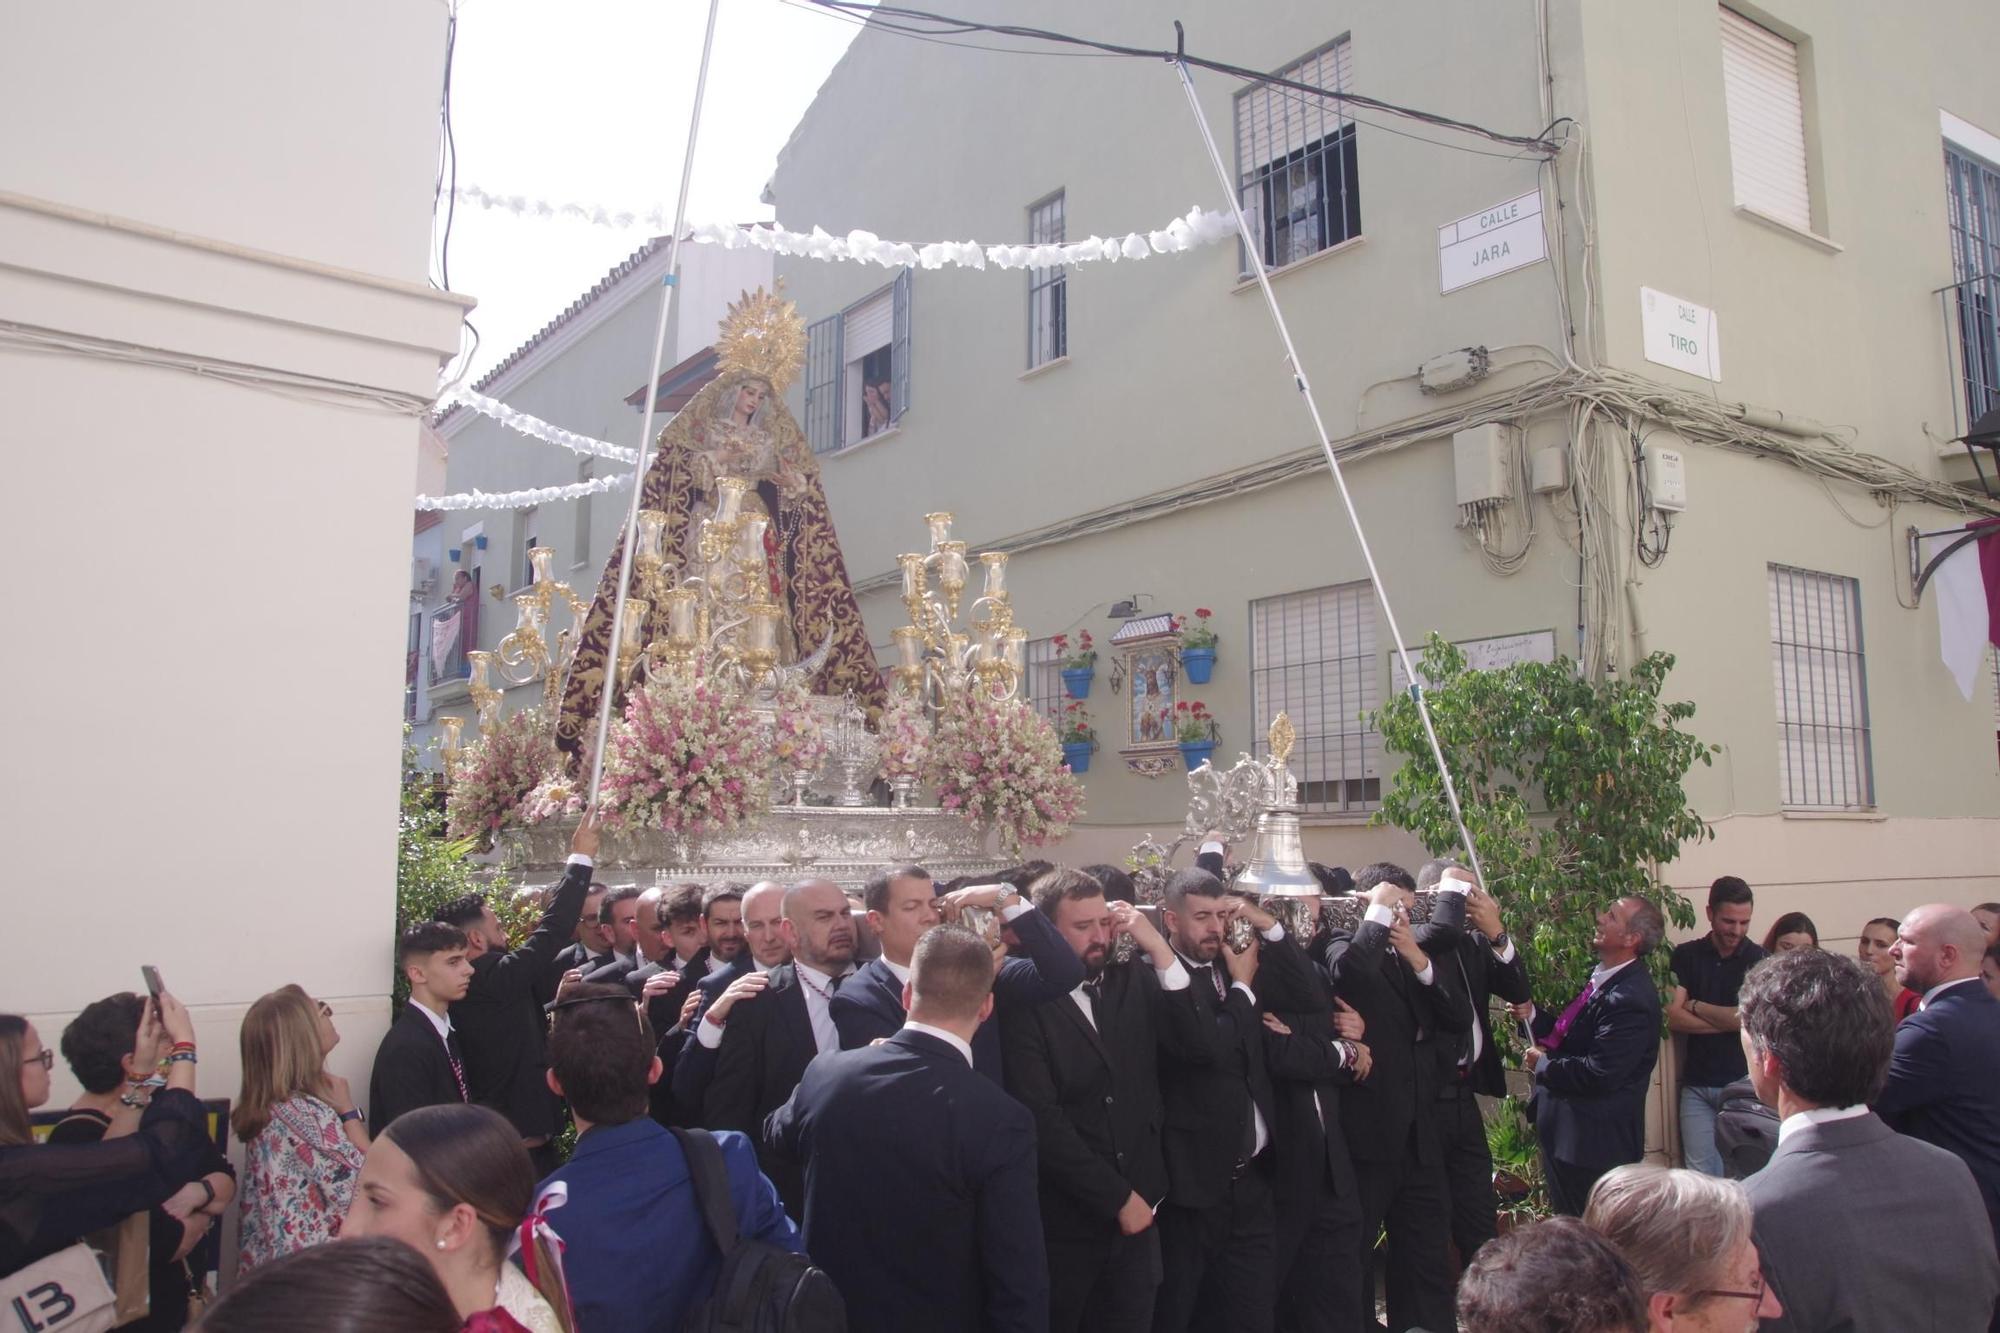 Procesión de la Virgen de la Trinidad por su barrio y con motivo de su festividad

